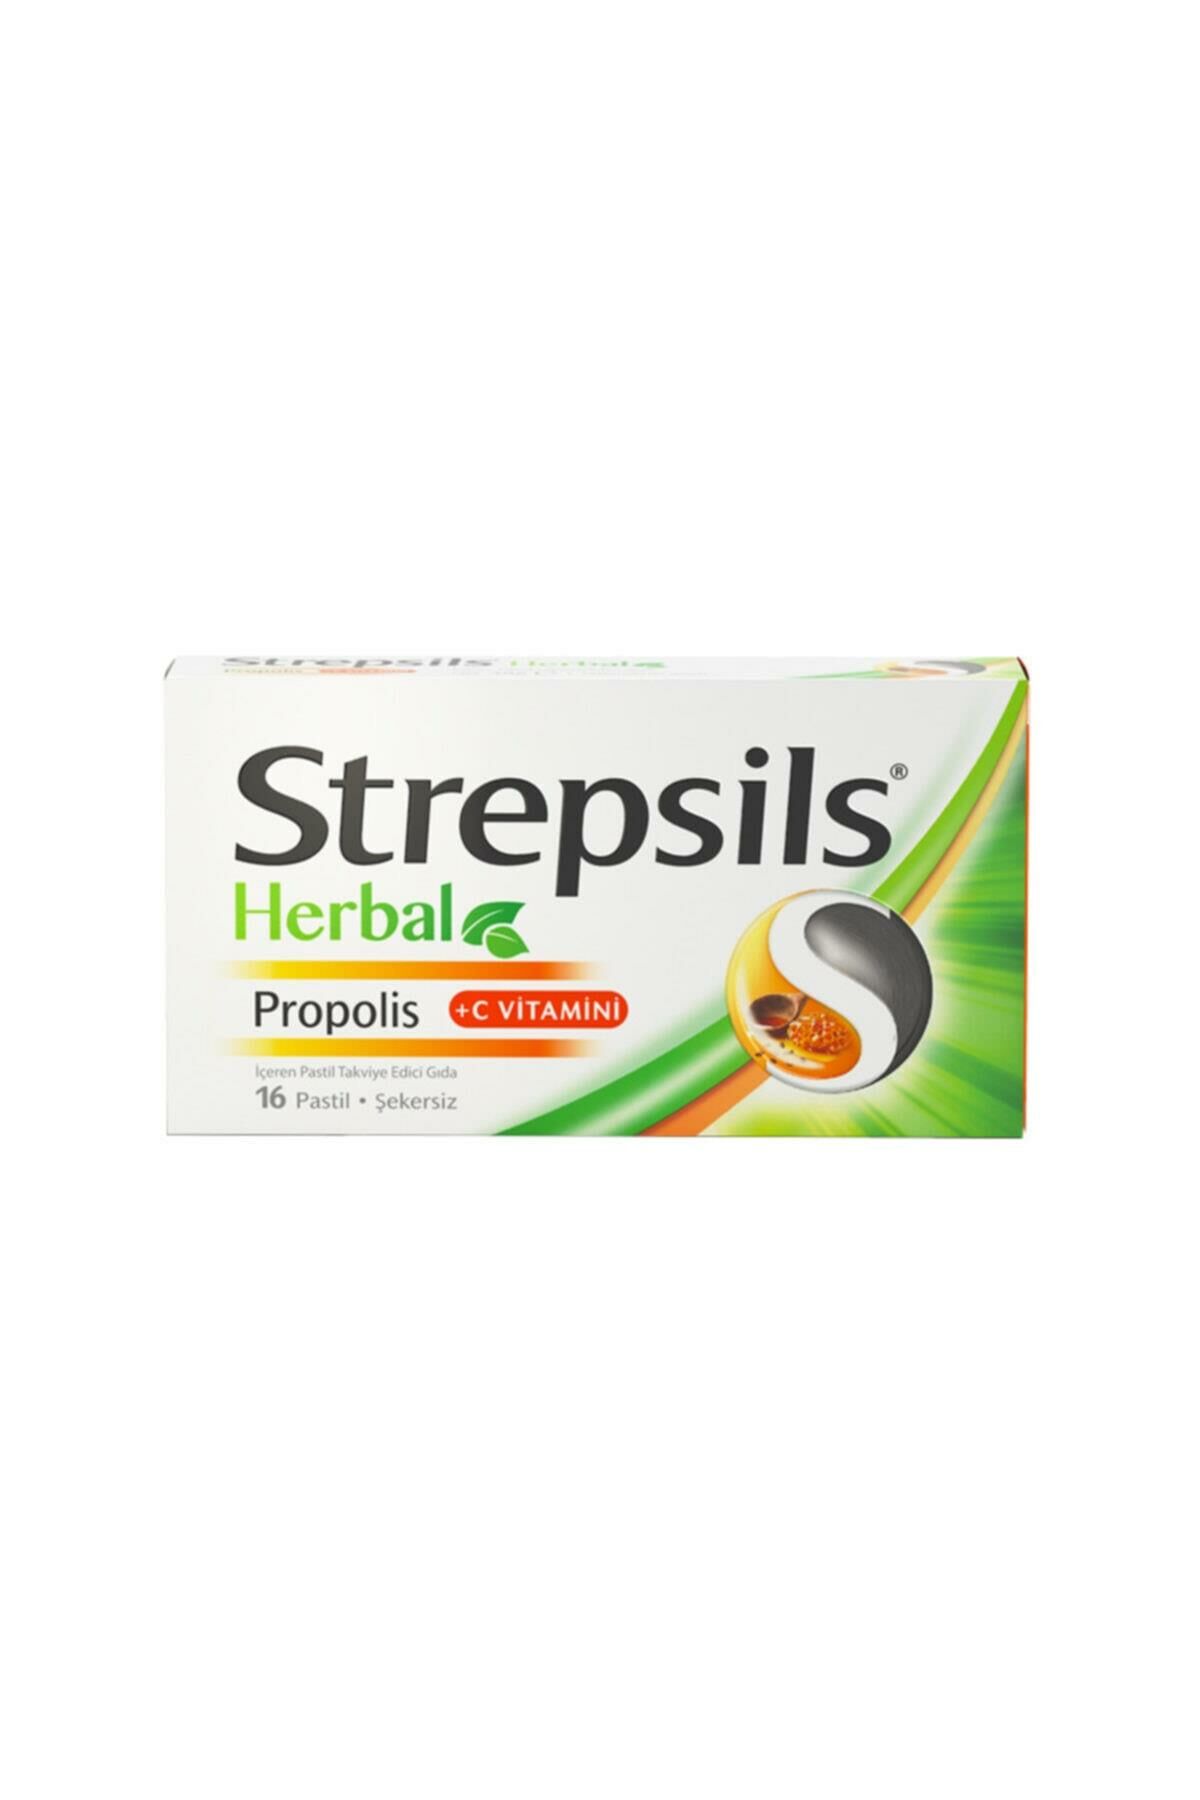 Strepsils Herbal Propolis +C Vitamini 16 Pastil